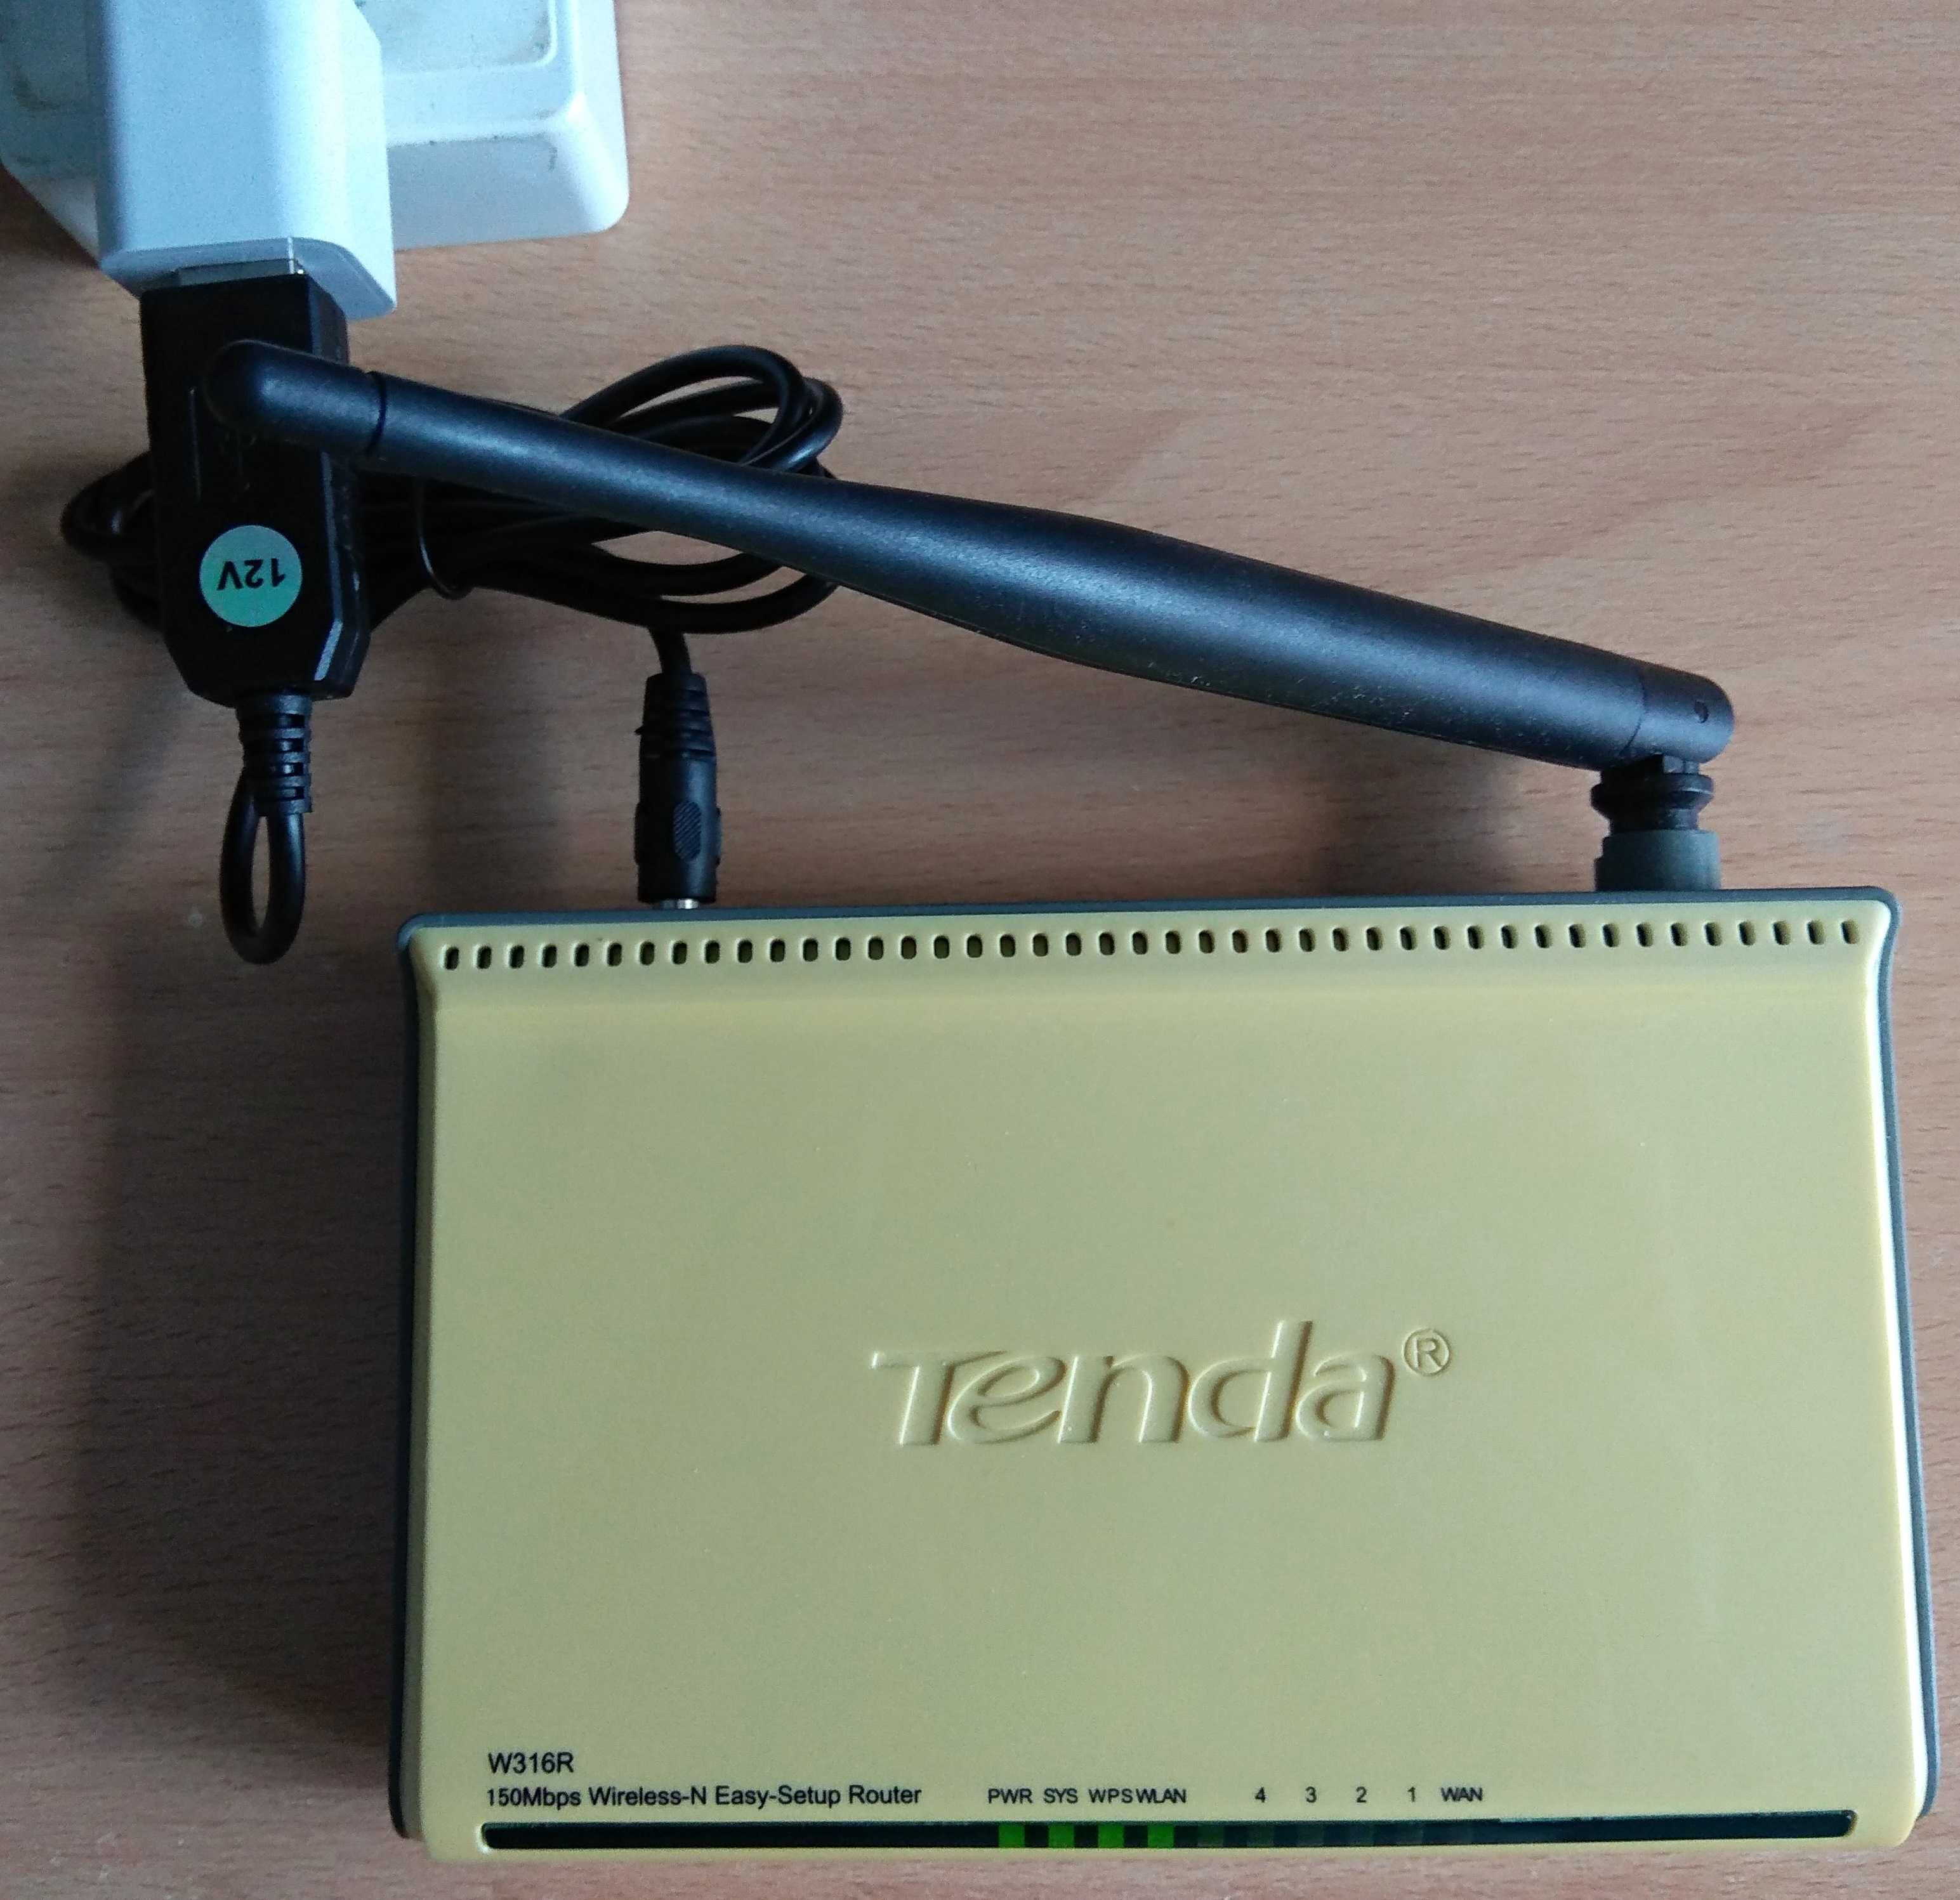 Router Tenda W316R, роутер, маршрутизатор, 150 Мбит/с, адаптер 5V->12V